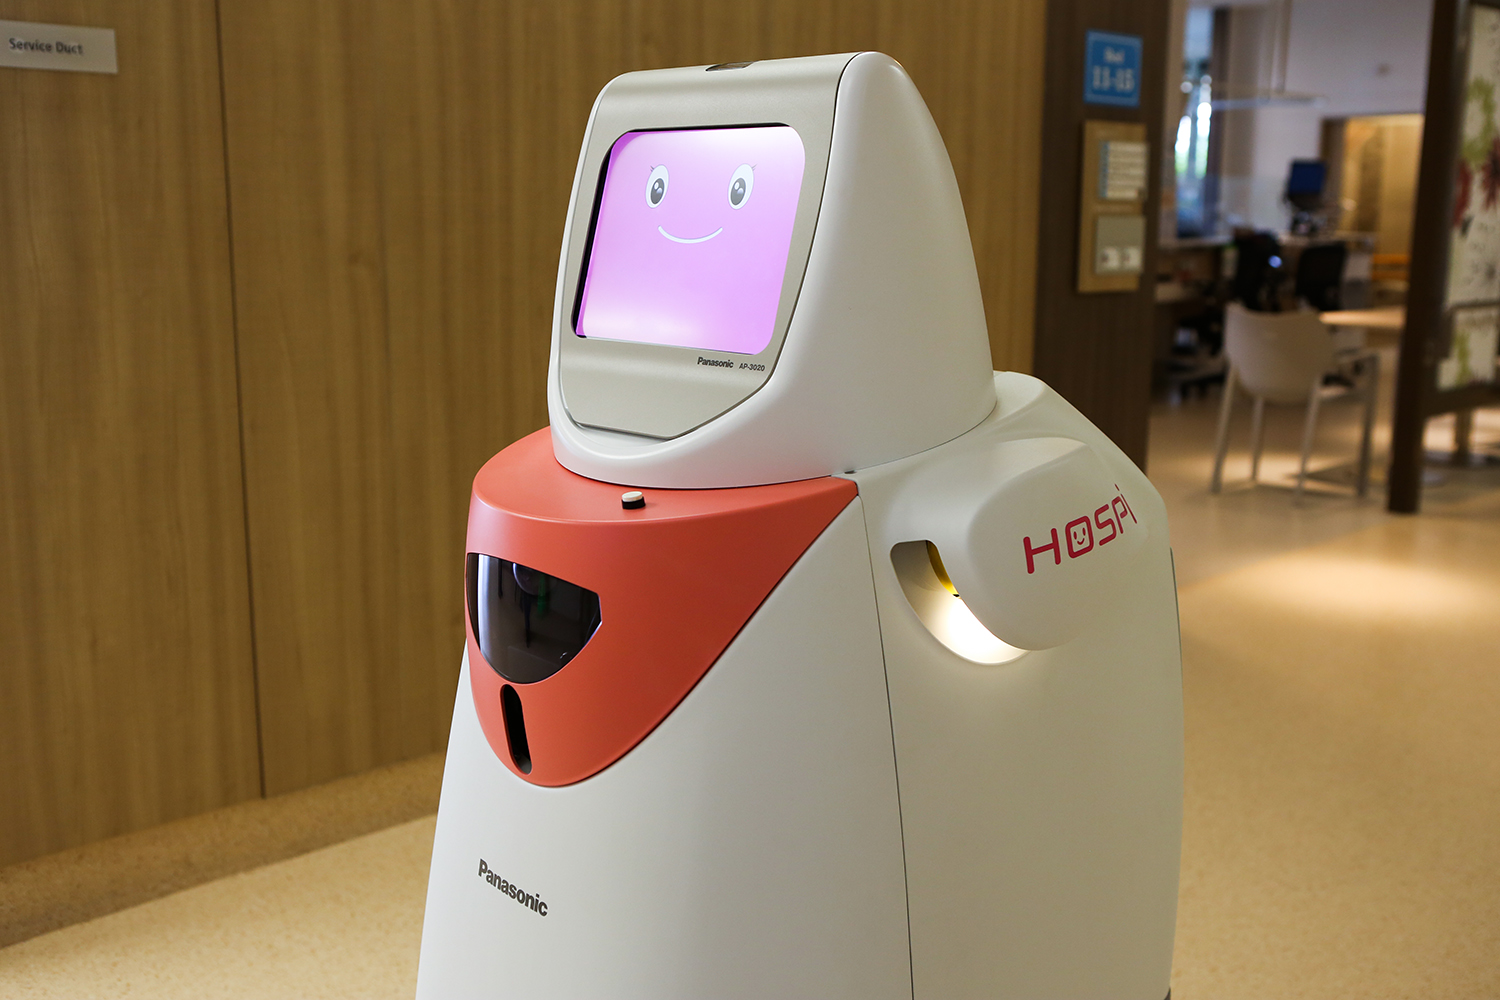 أحد الروبوتات من إنتاج شركة باناسونيك والتي تعمل بالتوصيل وفي القطاع الصحي